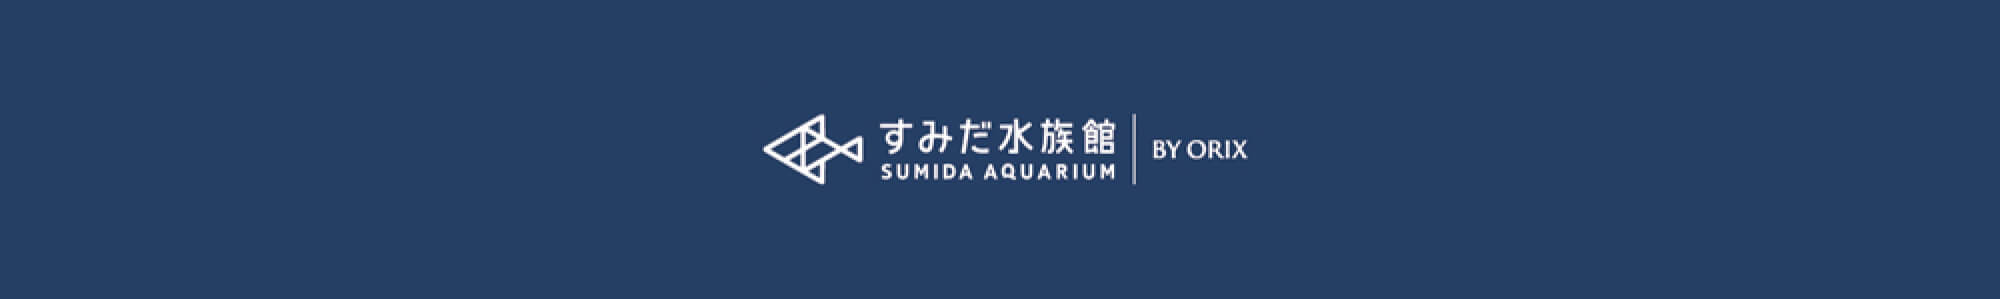 すみだ水族館 SUMIDA AQUARIUM BY QRIX